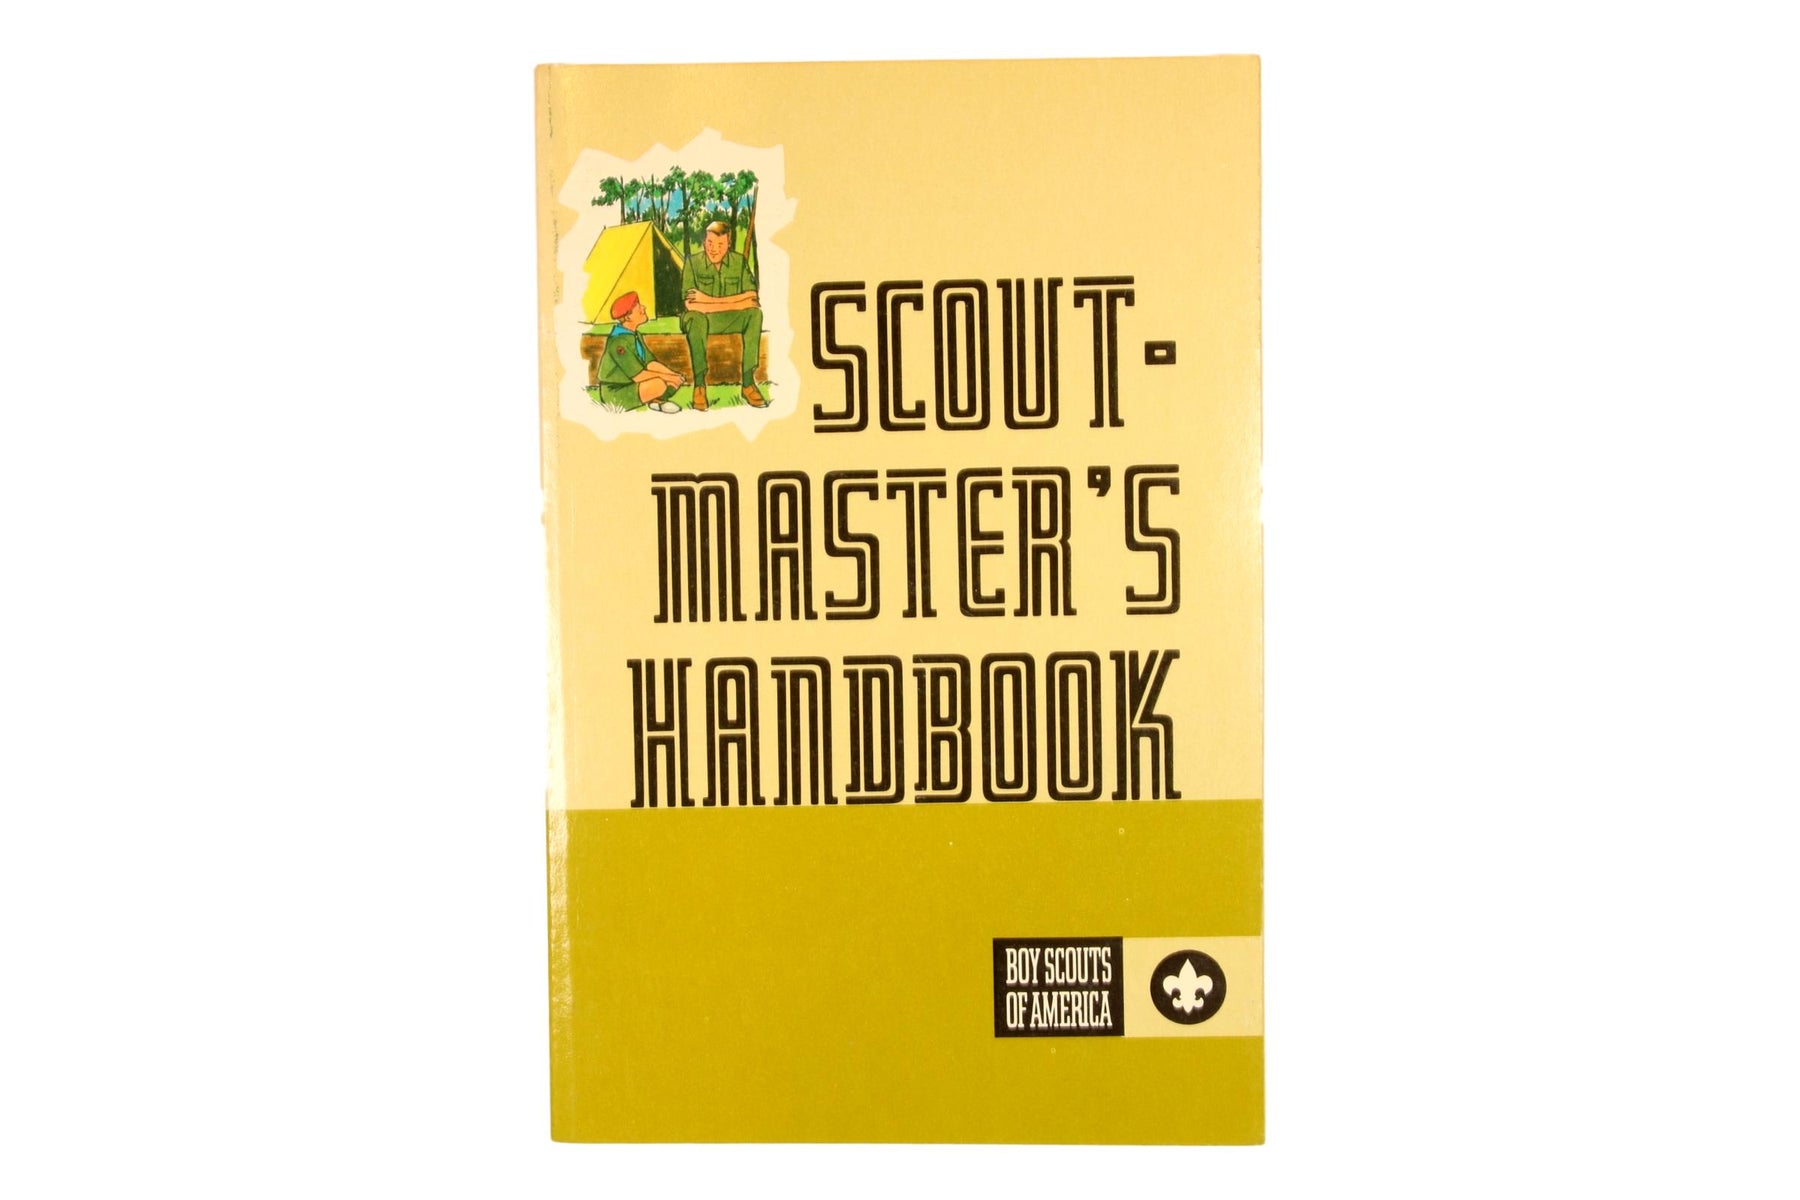 Scoutmaster Handbook 1978